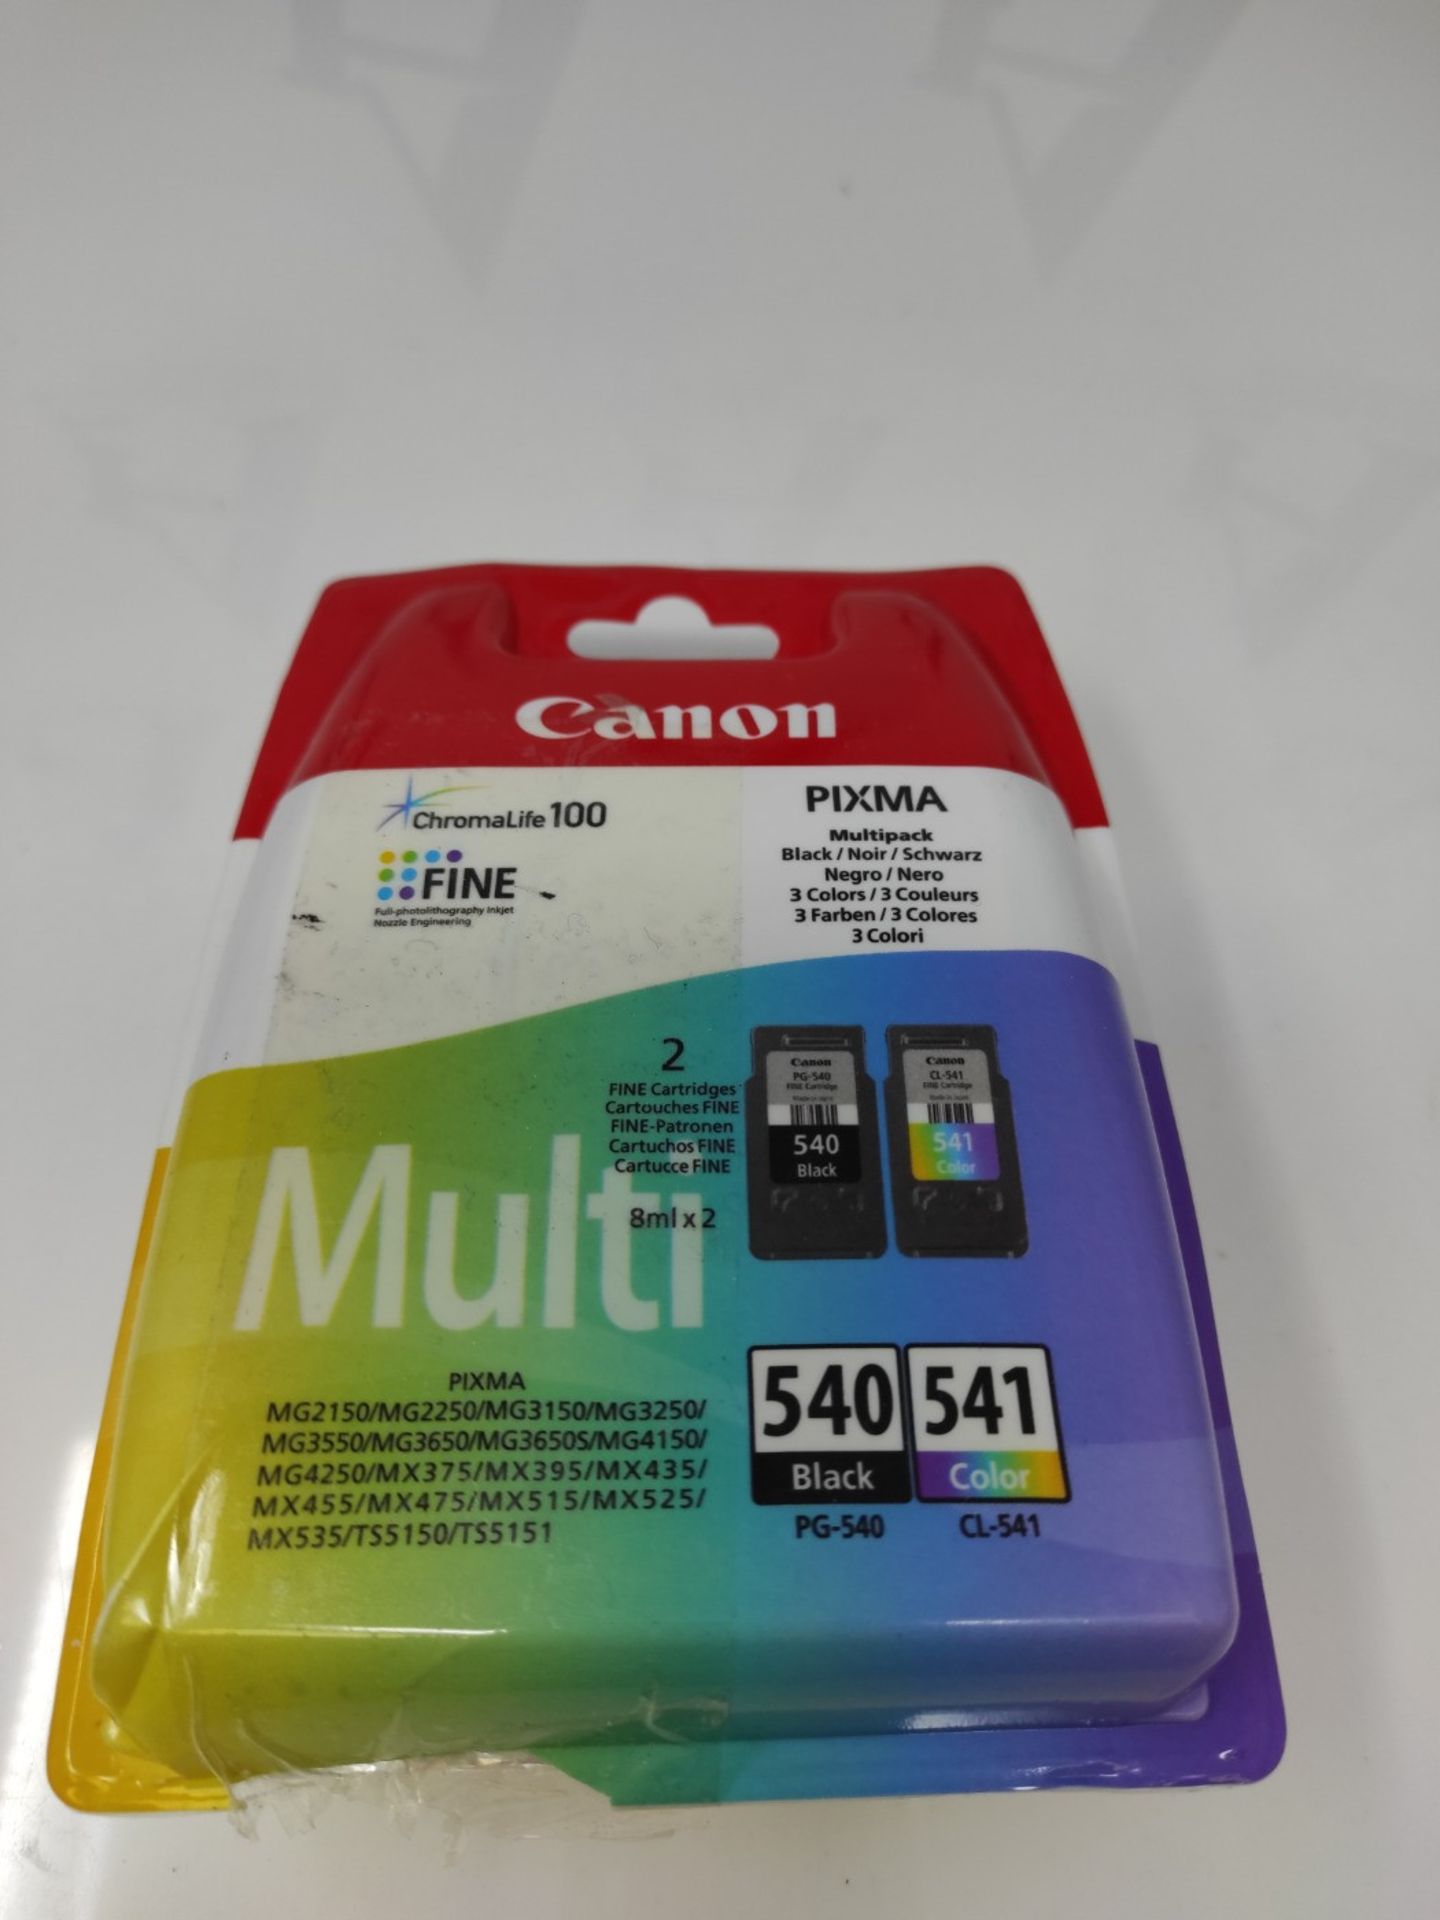 Canon PG-540 Black + CL-541 Colour Genuine Ink Cartridges  Multipack - Image 2 of 3